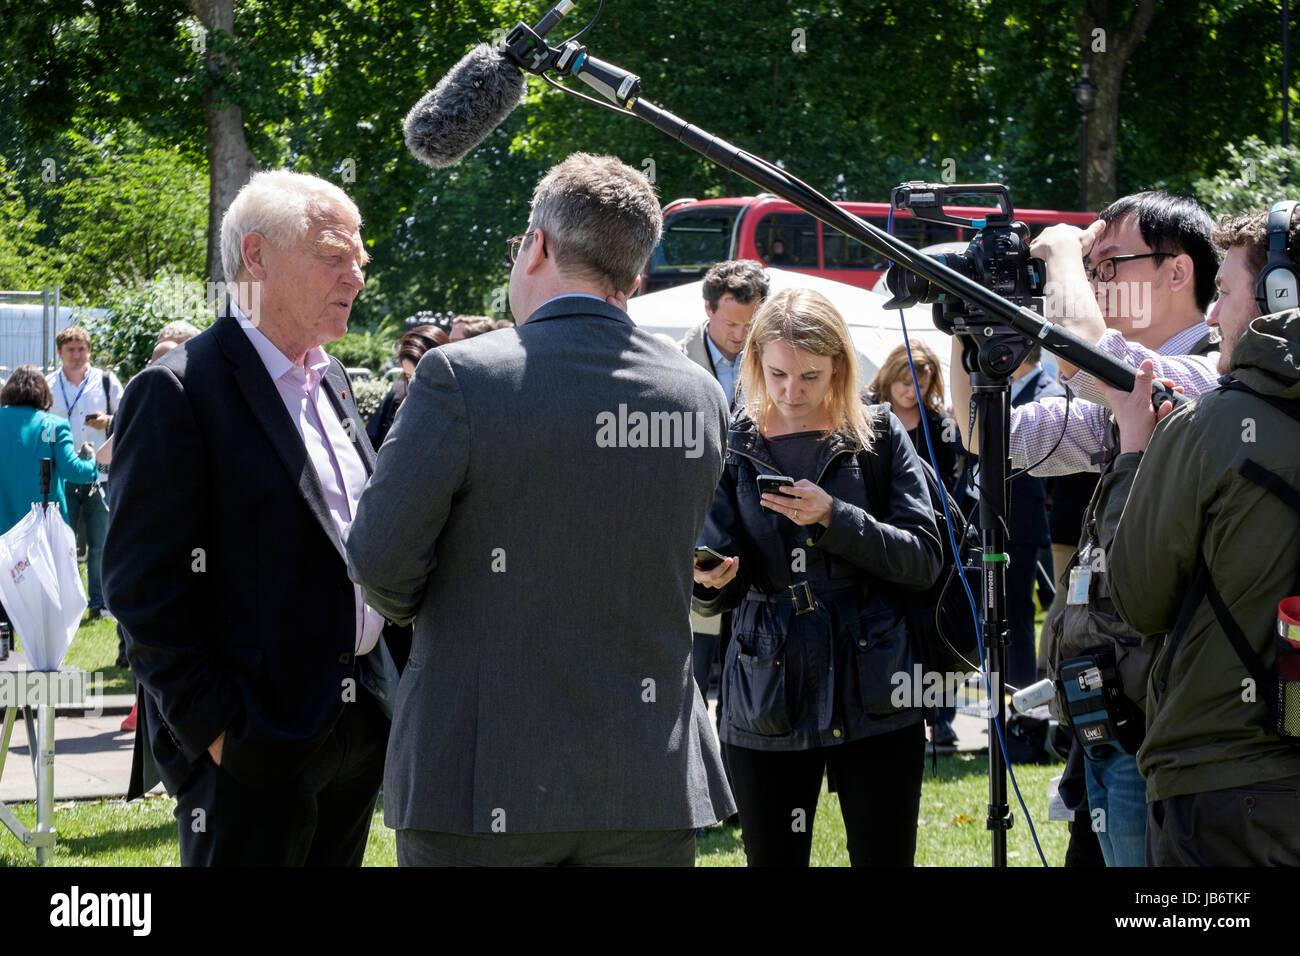 Londra, Regno Unito. 9 Giugno 2017. L'ex leader liberaldemocratico Lord Paddy Ashdown è intervistato dall'equipaggio televisivo dopo le elezioni generali del Regno Unito. Foto Stock